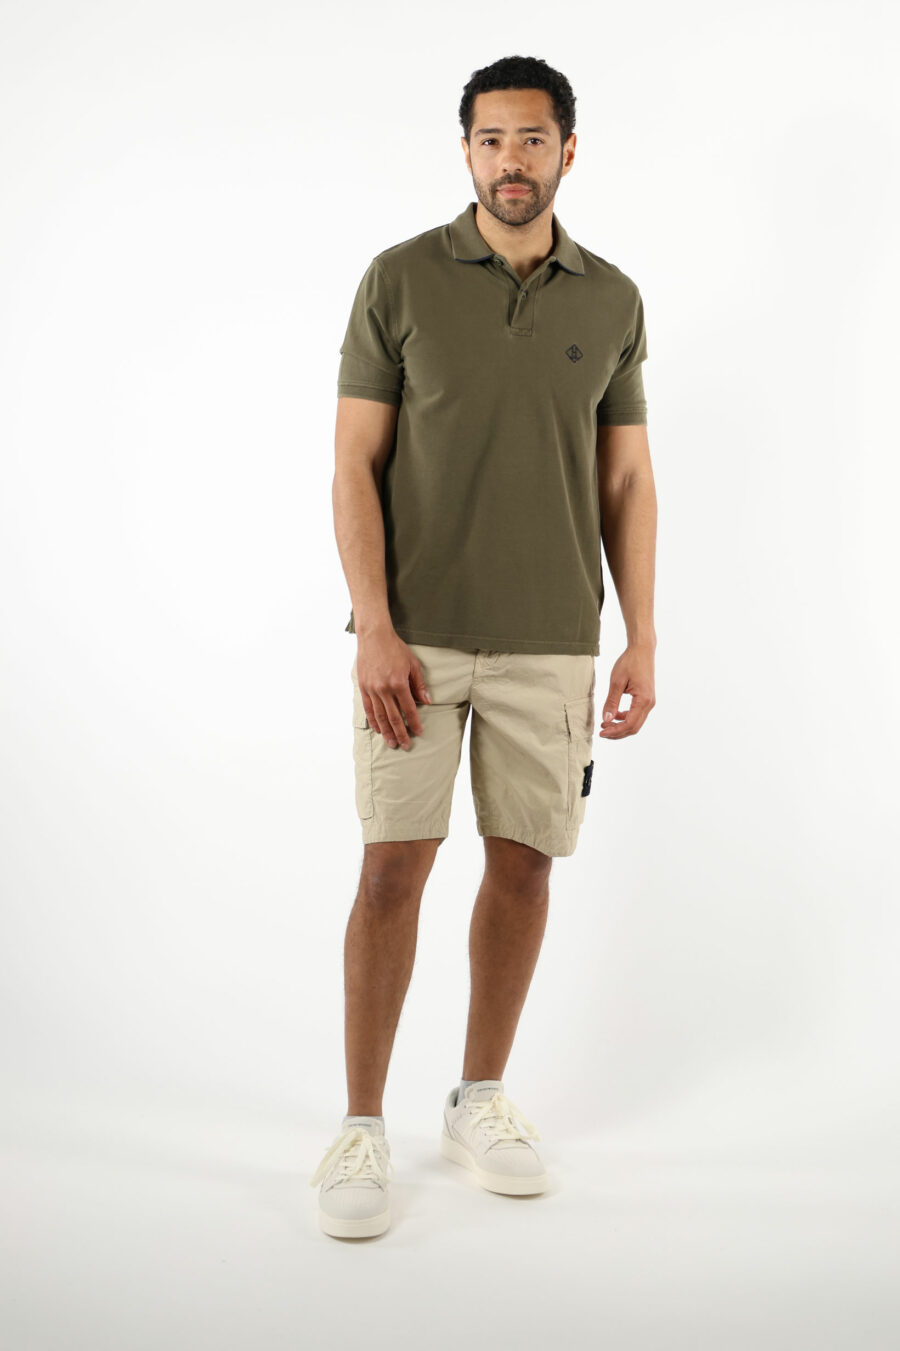 Pantalón corto color arena estilo cargo con logo parche brújula - 111370